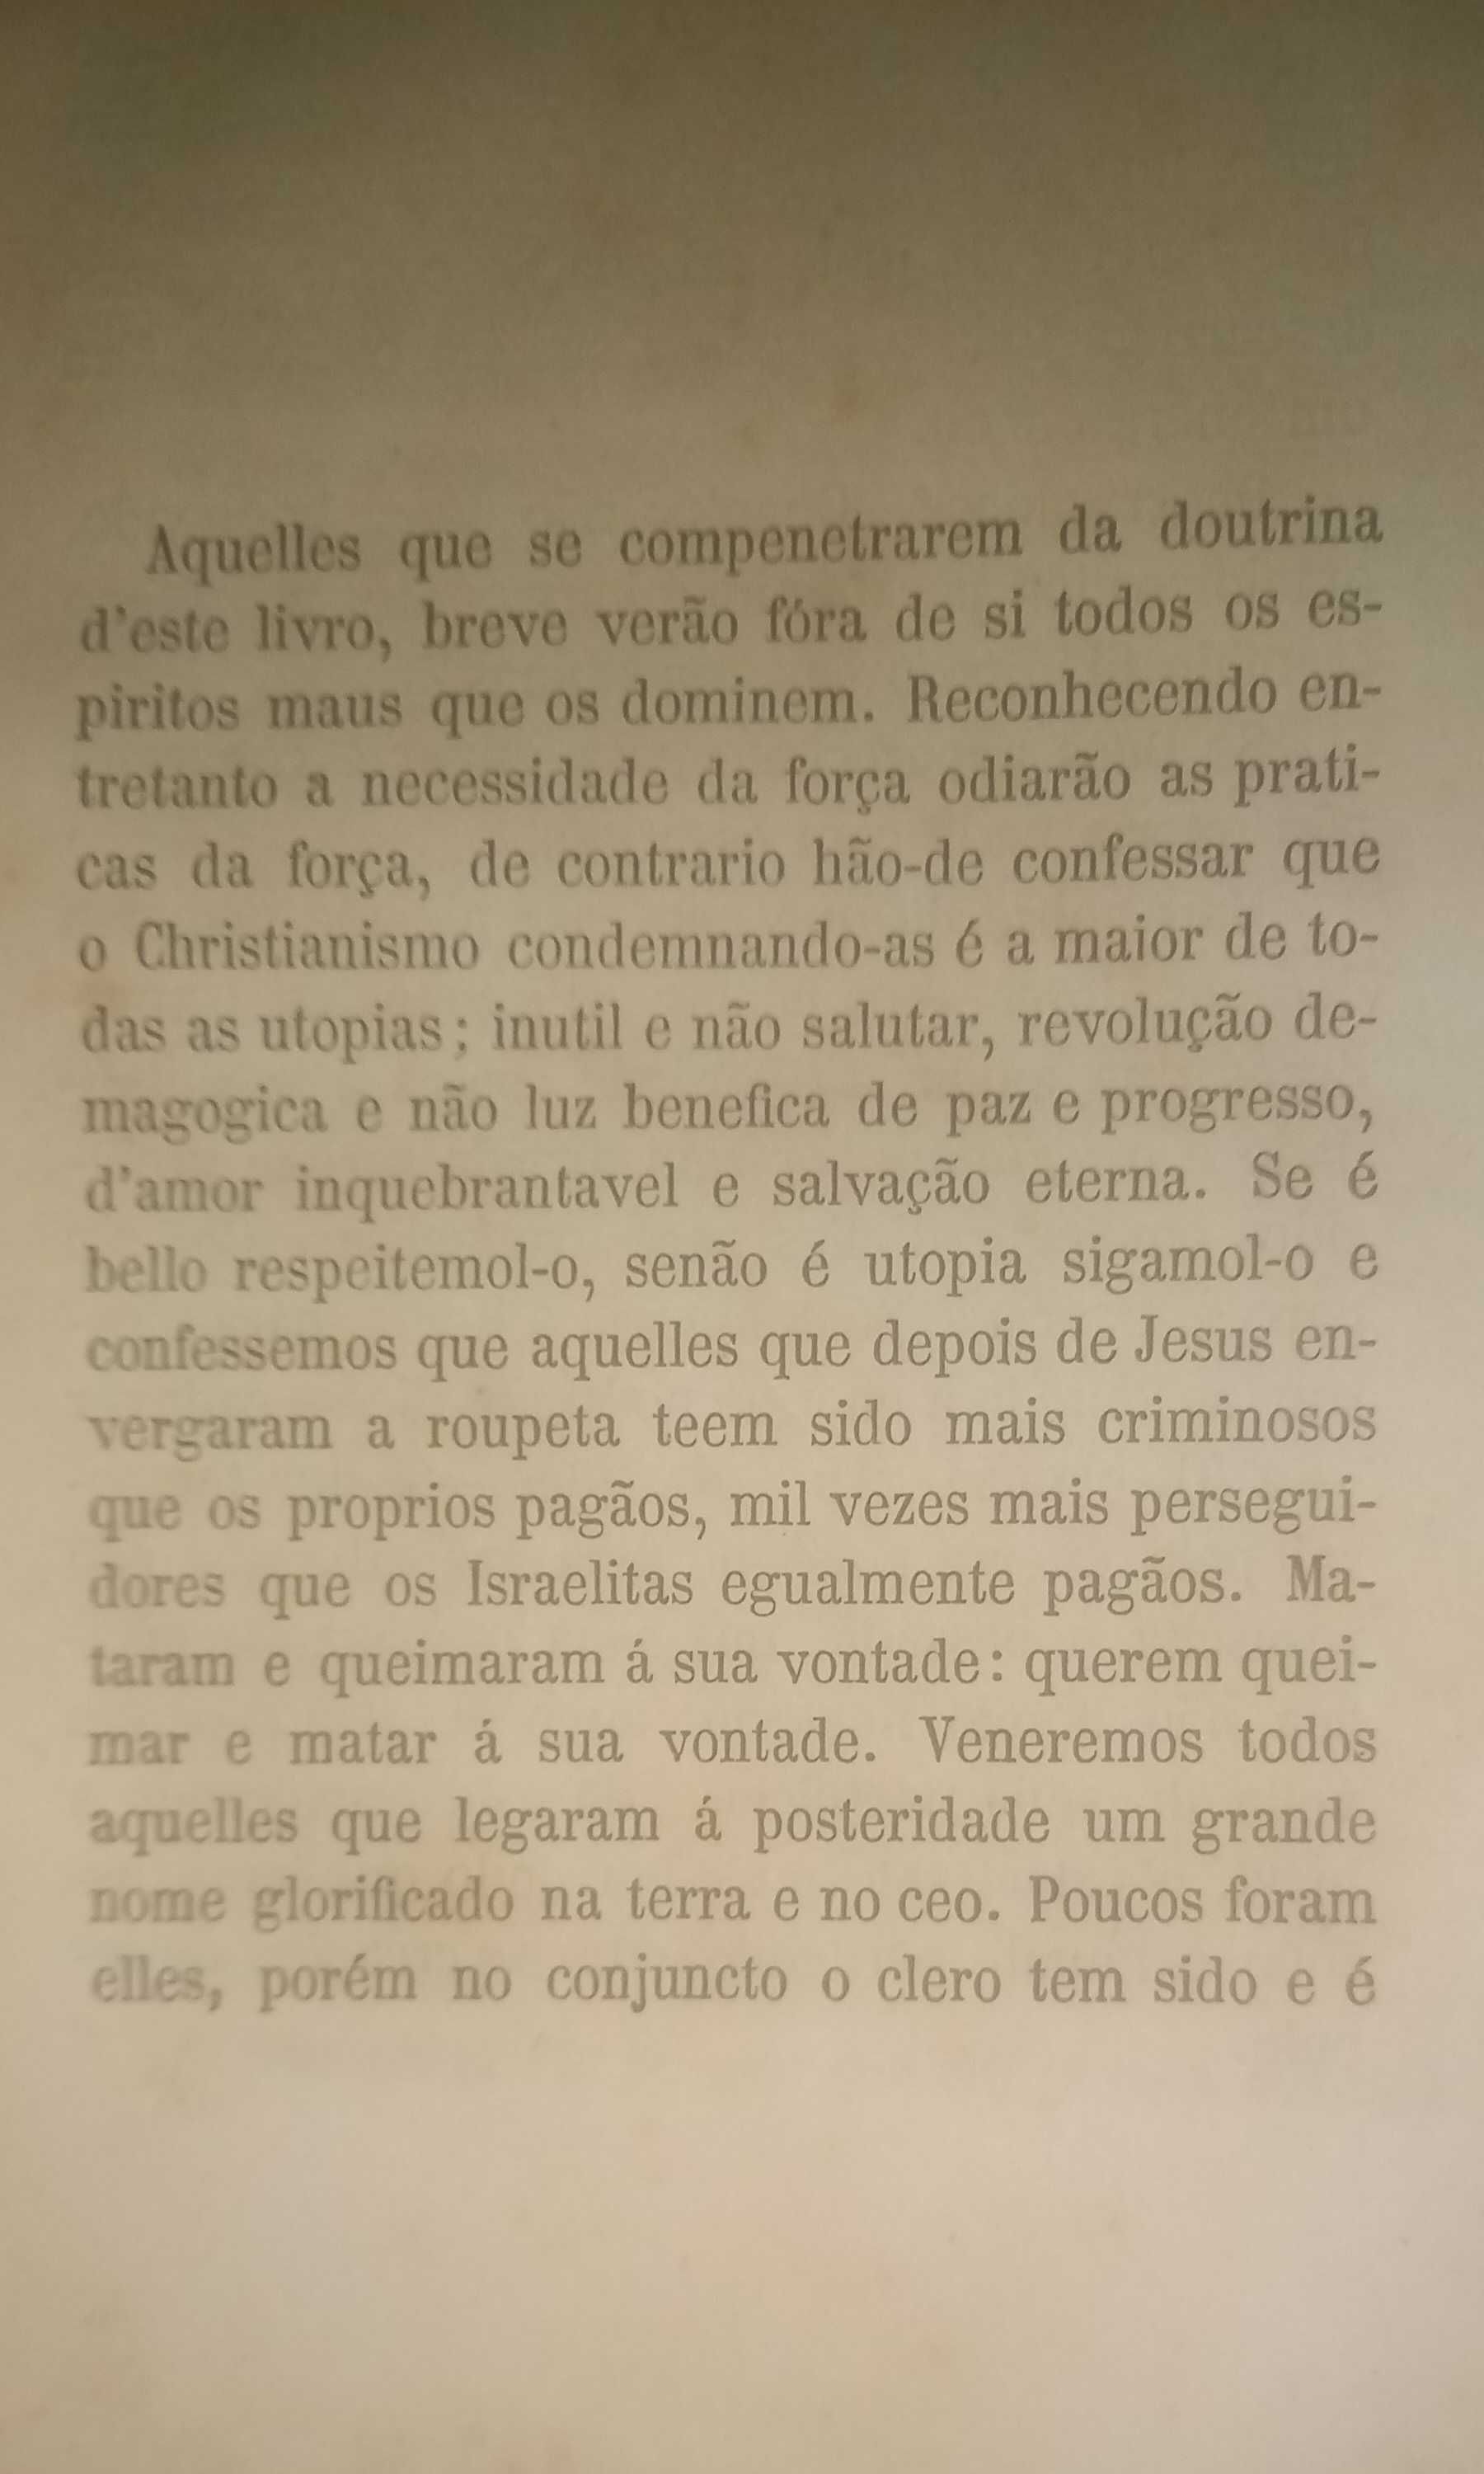 Miscelânea - comédias em português (livro proibido).